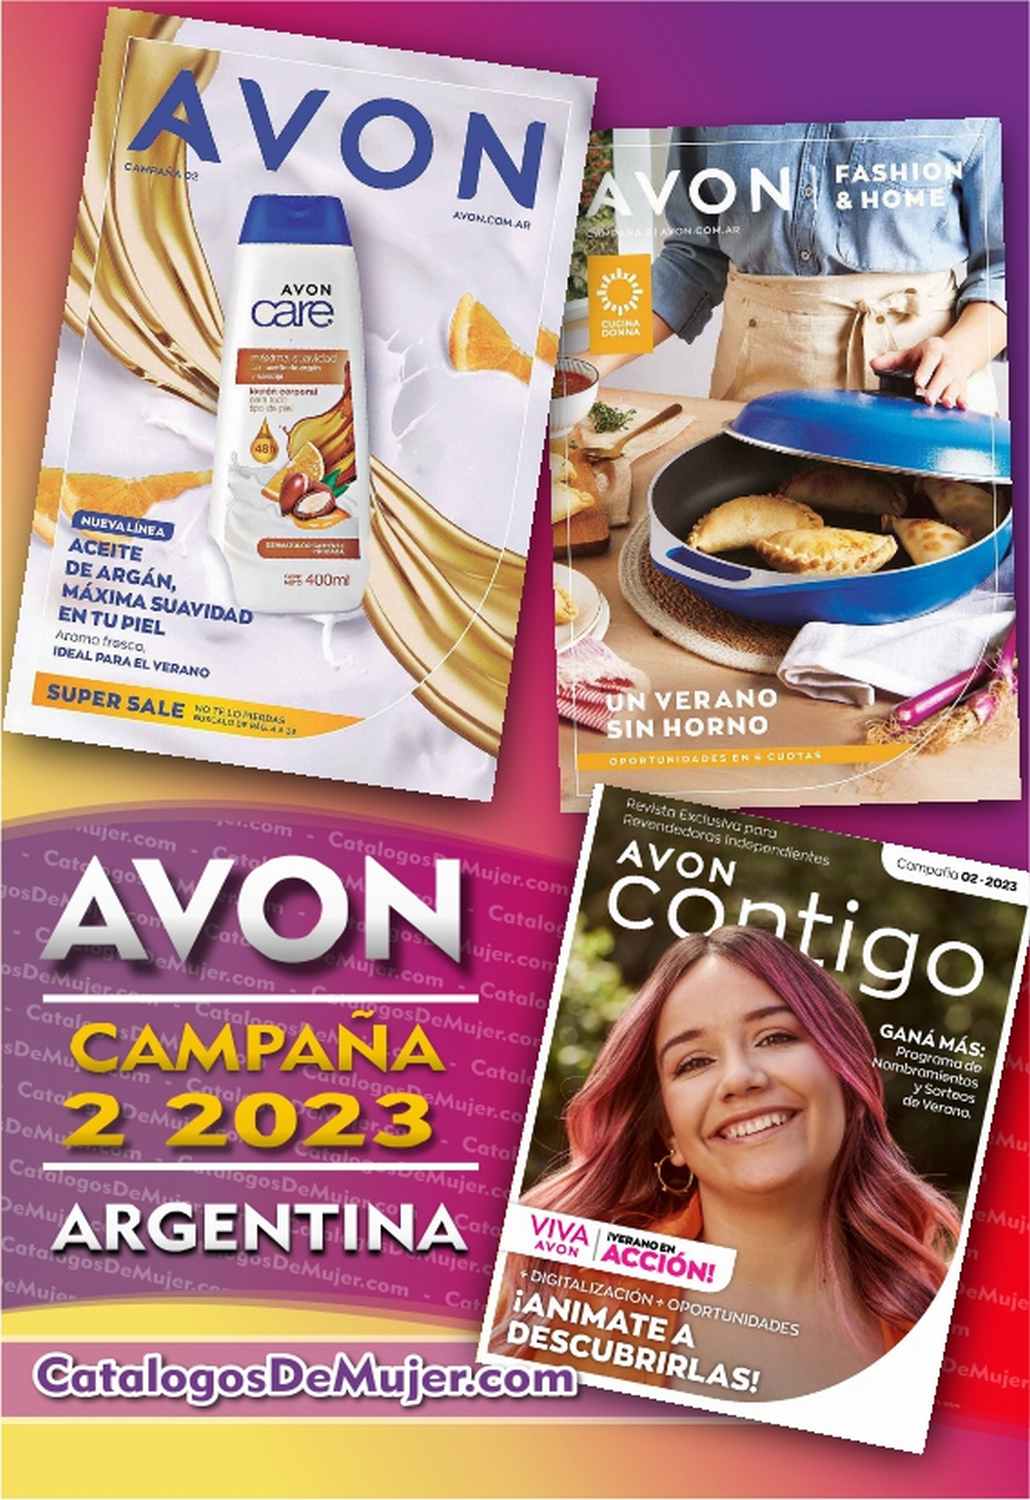 Catalogo Avon Campaña 2 Argentina 2023